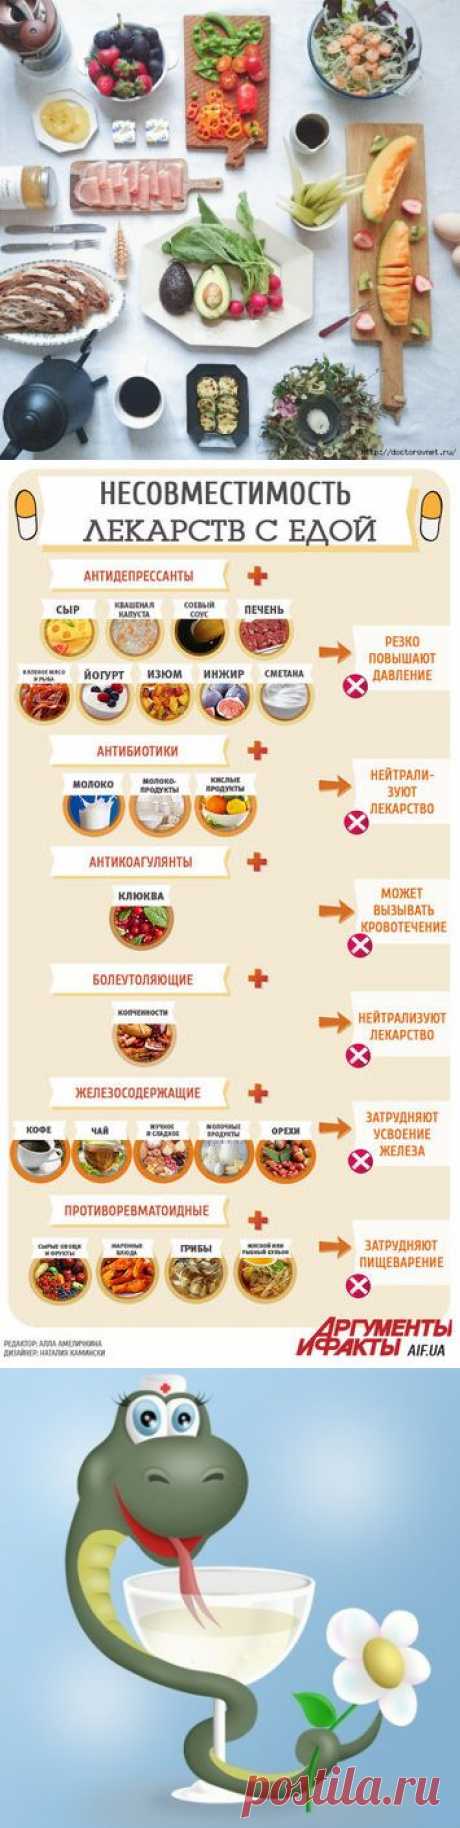 Инфографика самого вредного сочетания еды и лекарств